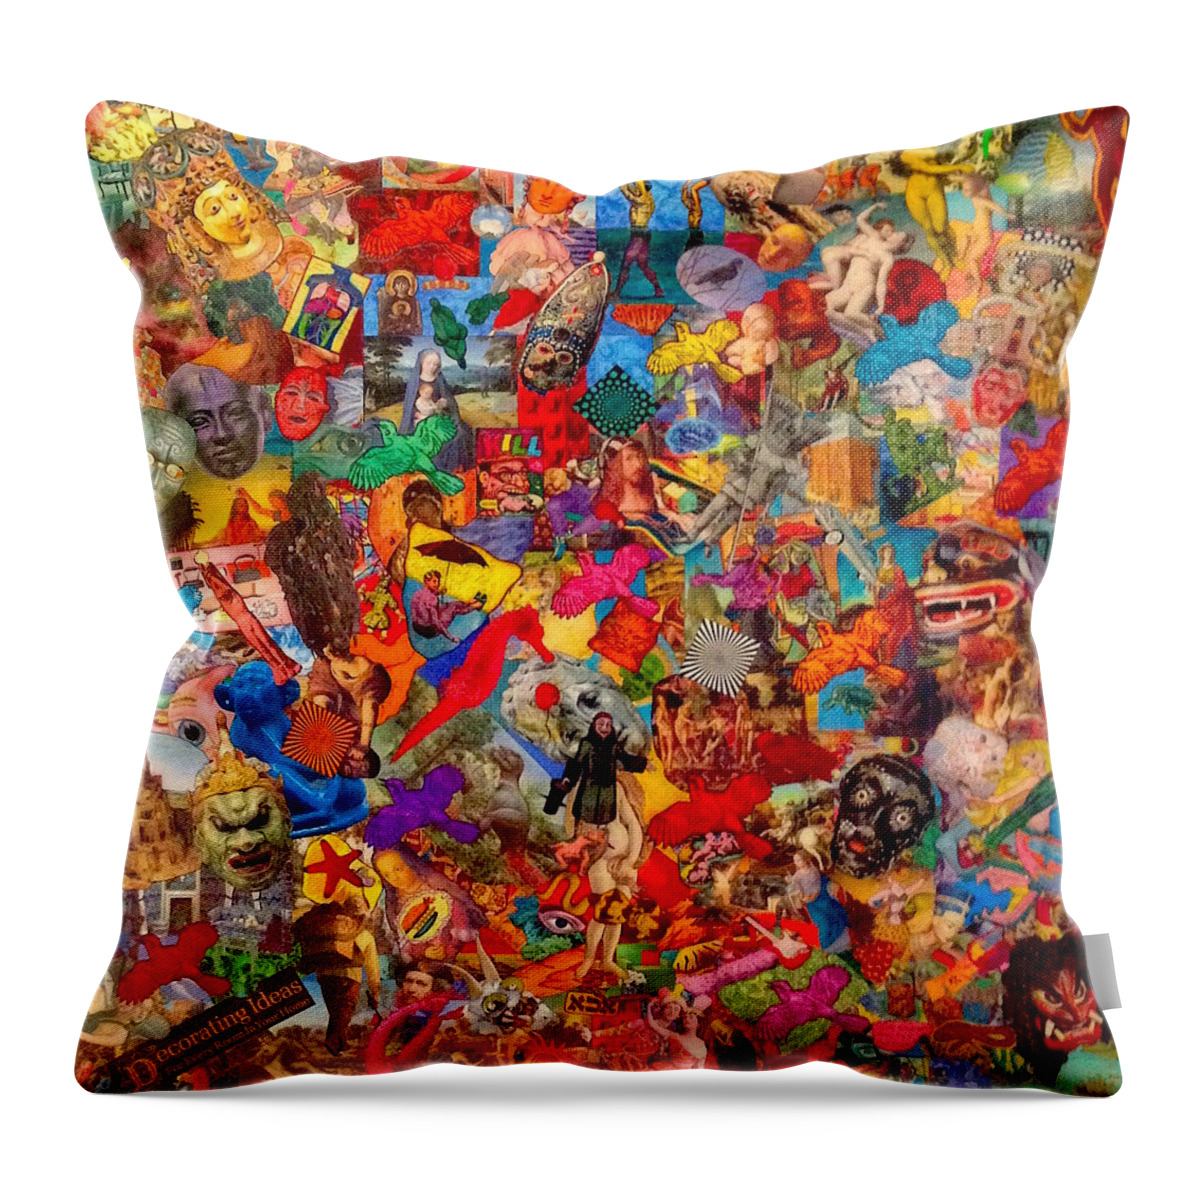  Throw Pillow featuring the digital art Masks by Steve Fields